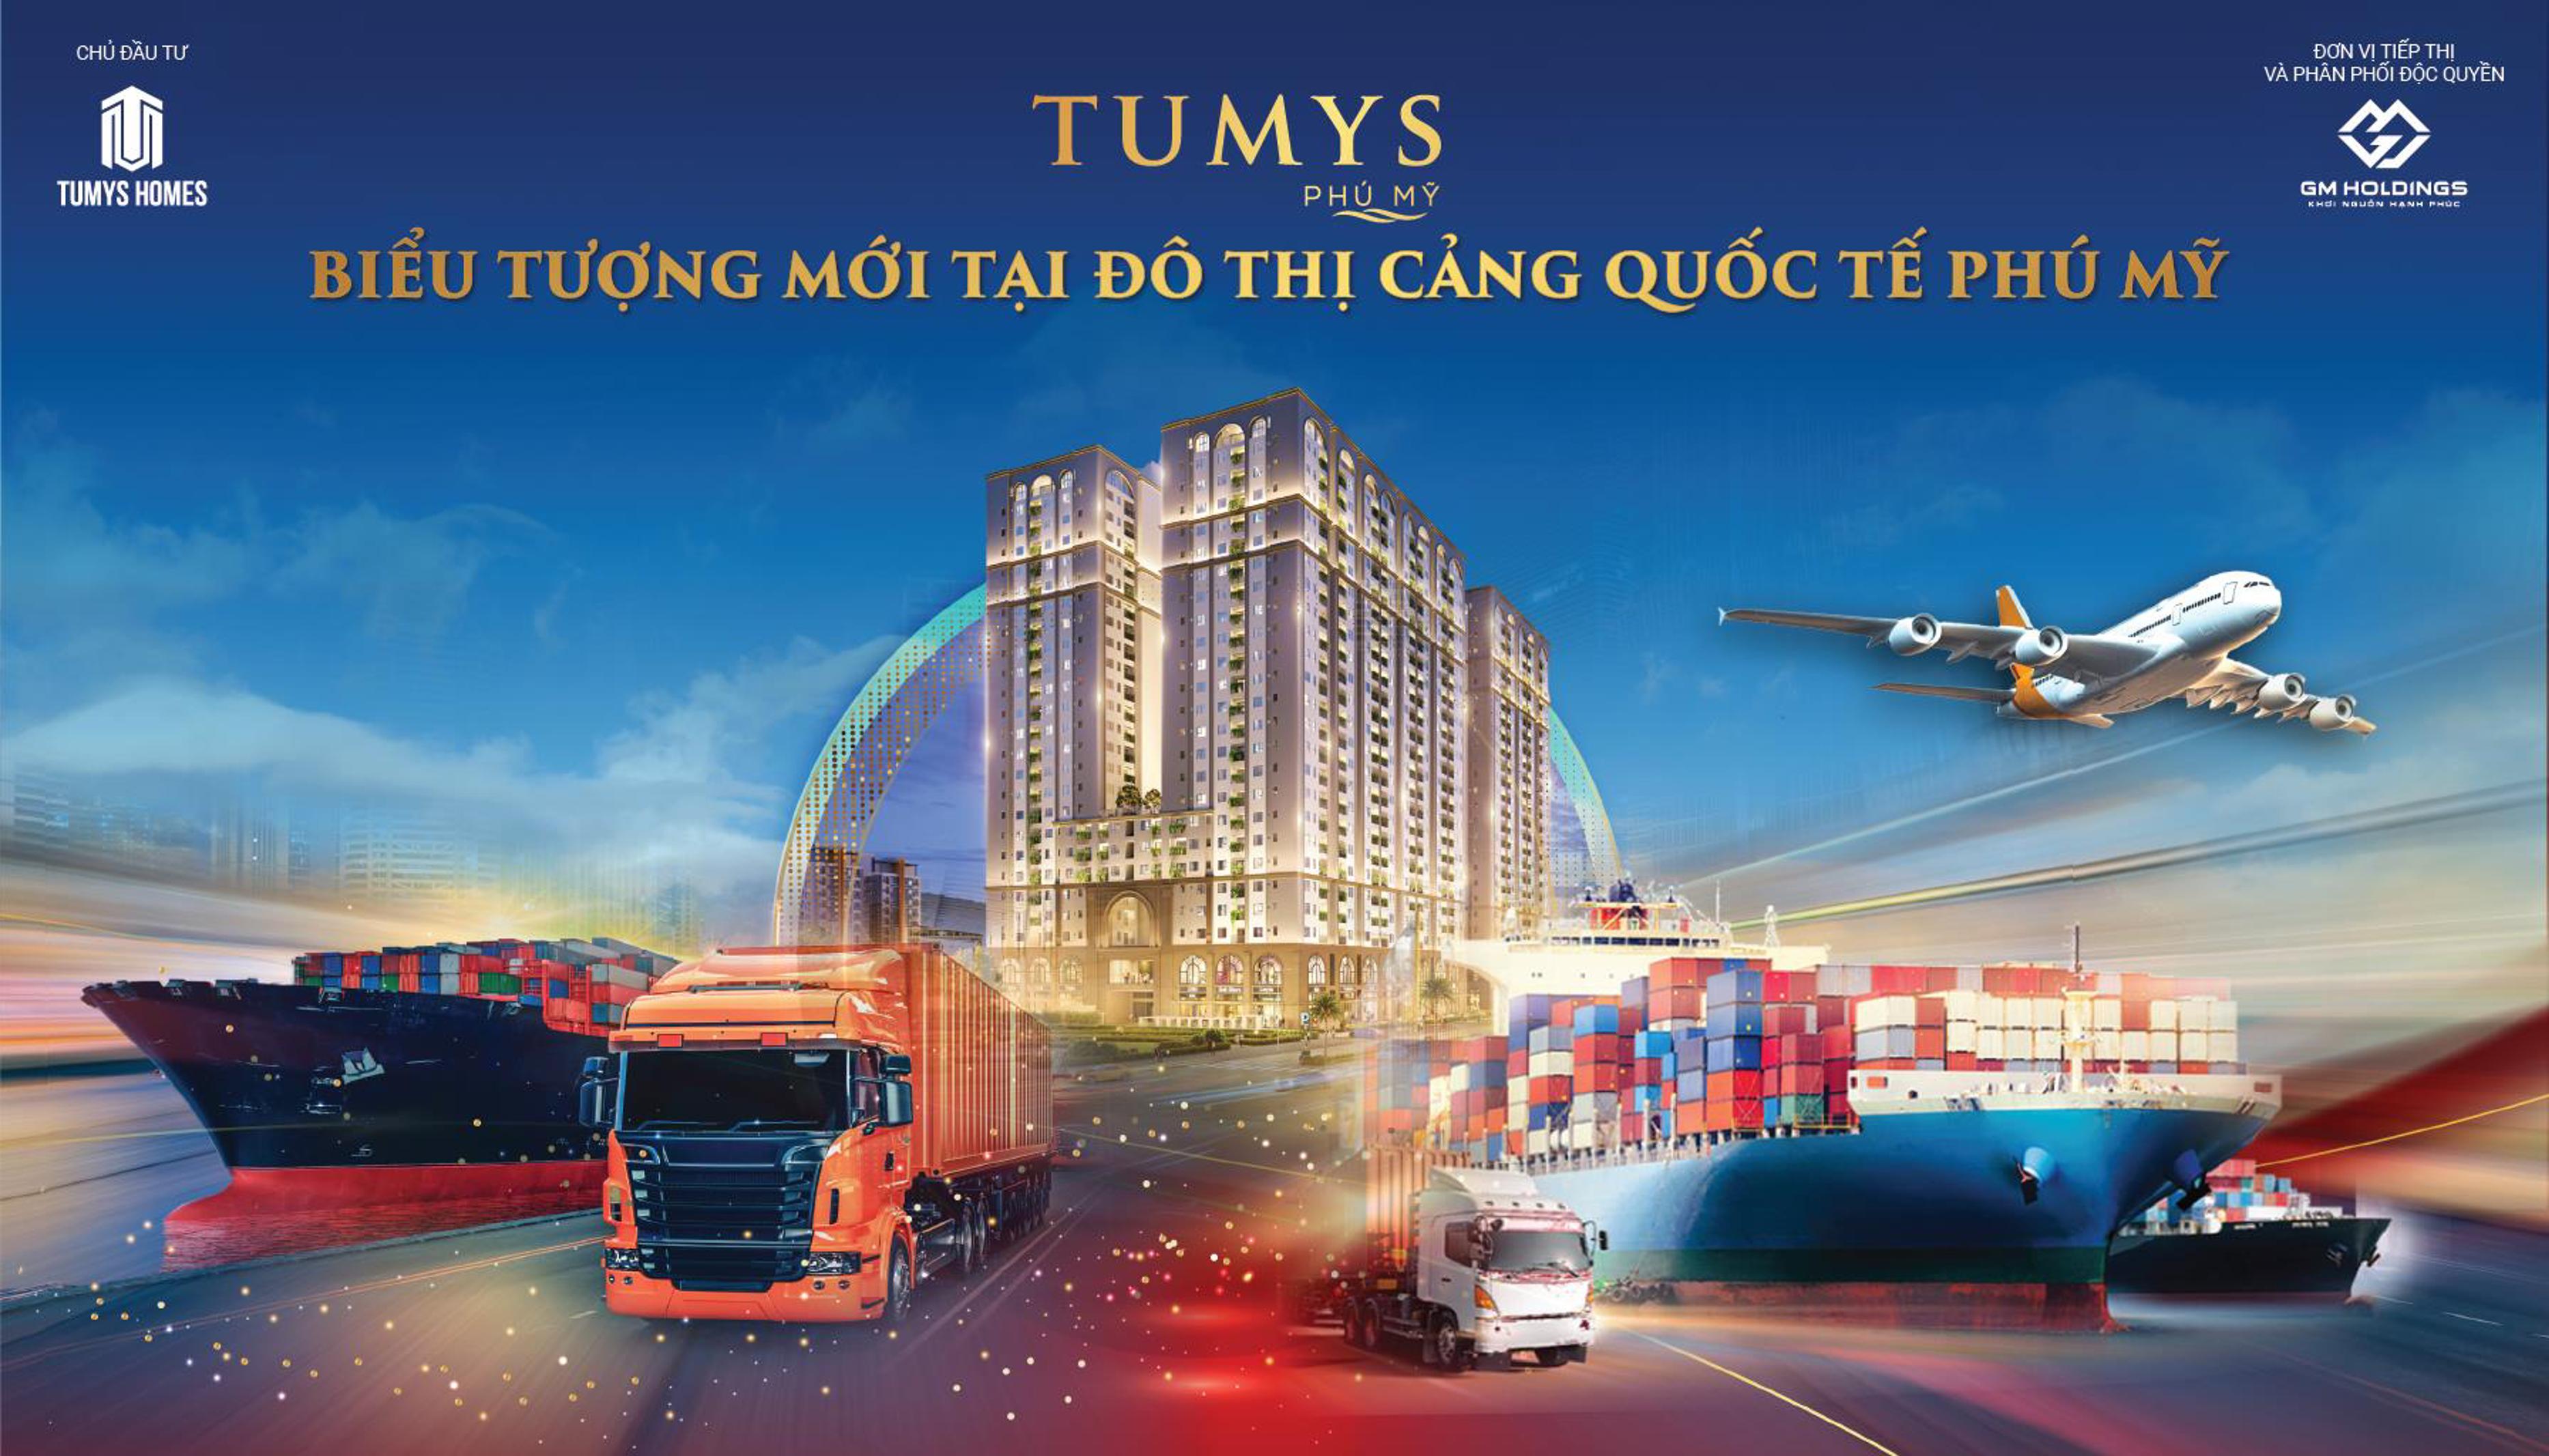 Chính thức nhận booking dự án căn hộ cao cấp Tumys Phú Mỹ chỉ 30tr/căn